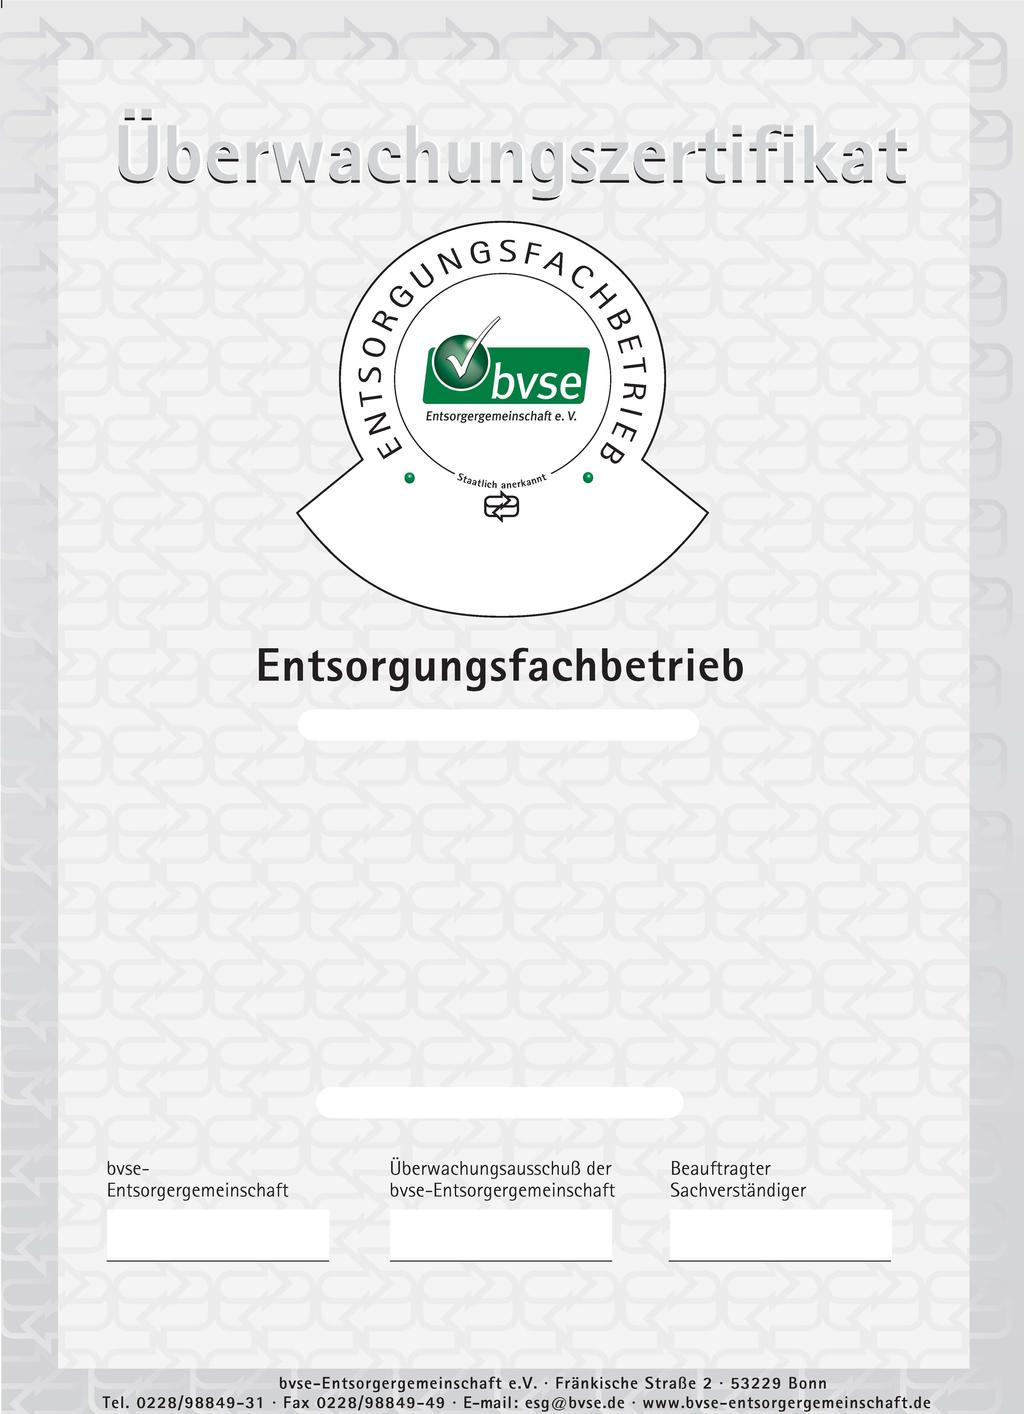 Überwachungszertifikat-Nr.: 10477 Der Betrieb erfüllt die Anforderungen der Gewerbeabfallverordnung. GmbH & Co. KG Str. 9 Bonn, 14.